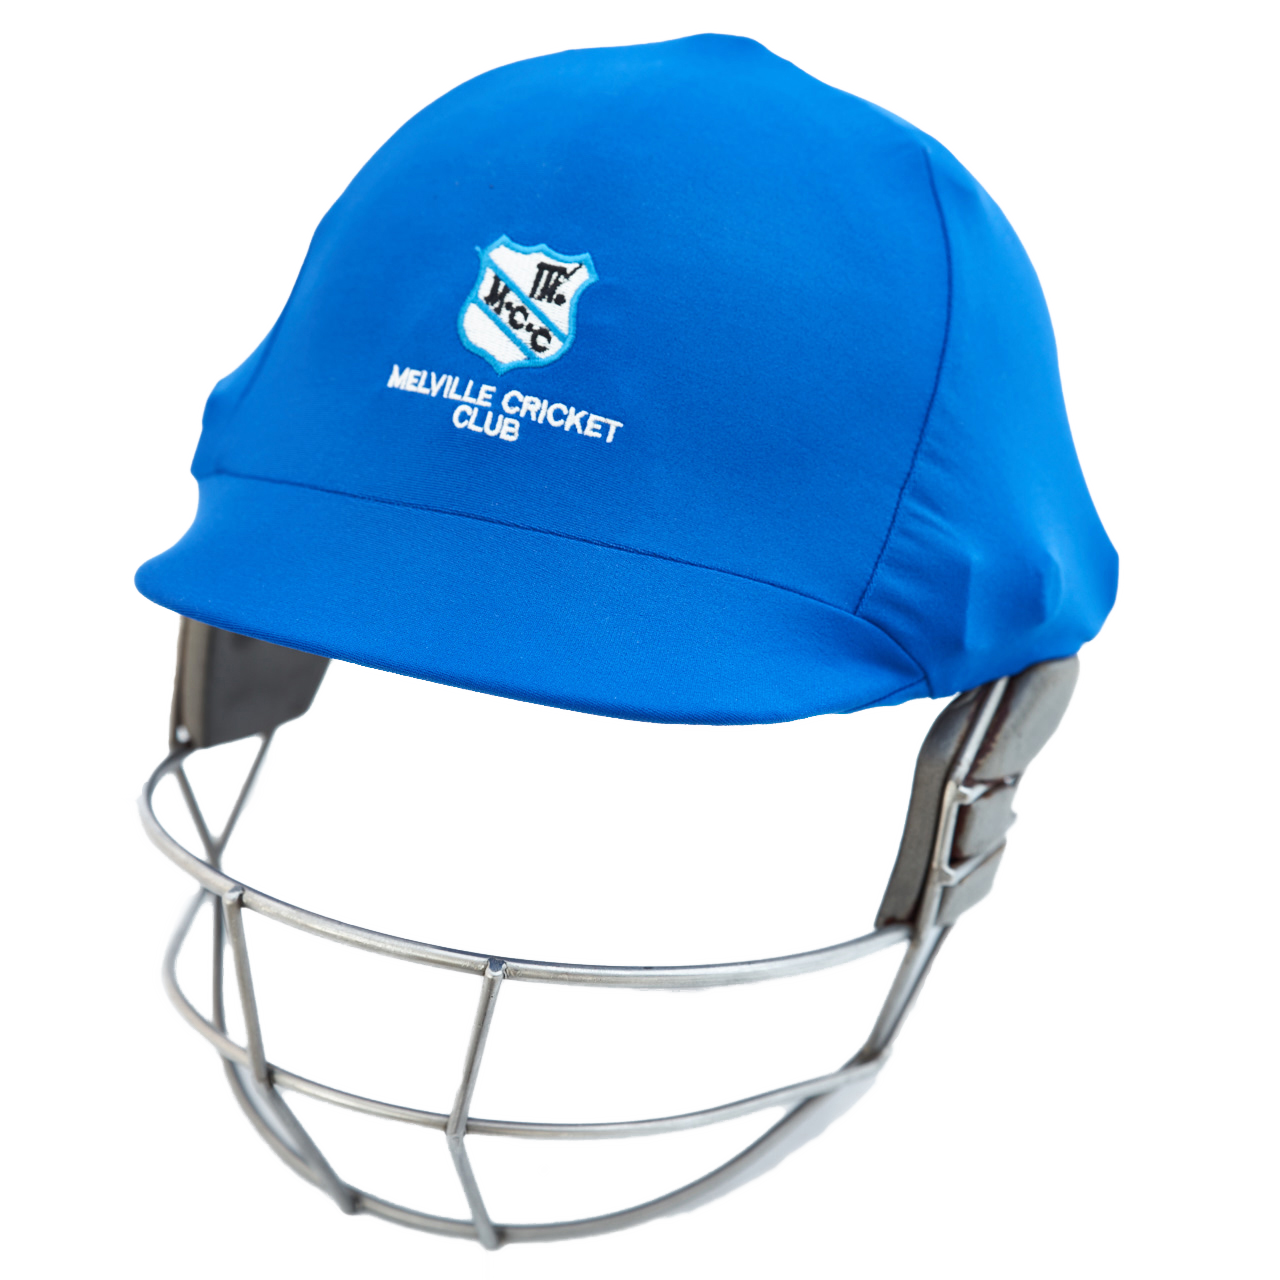 Cricket helm PNG Gambar Transparan